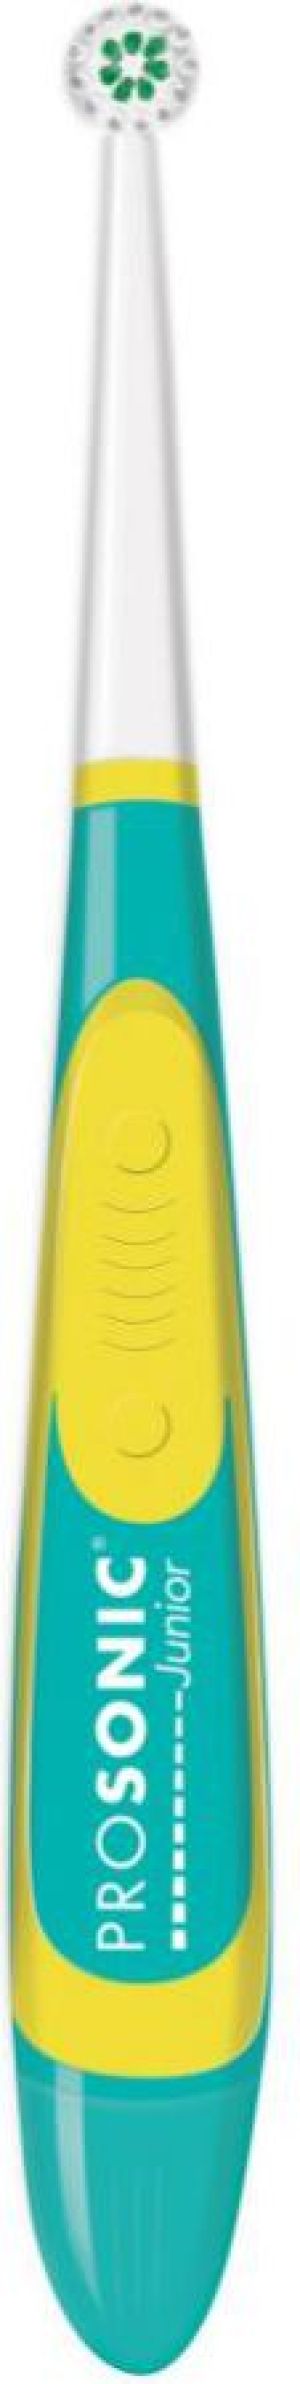 Szczoteczka Visiomed Prosonic Micro Junior Niebiesko-żółta 1